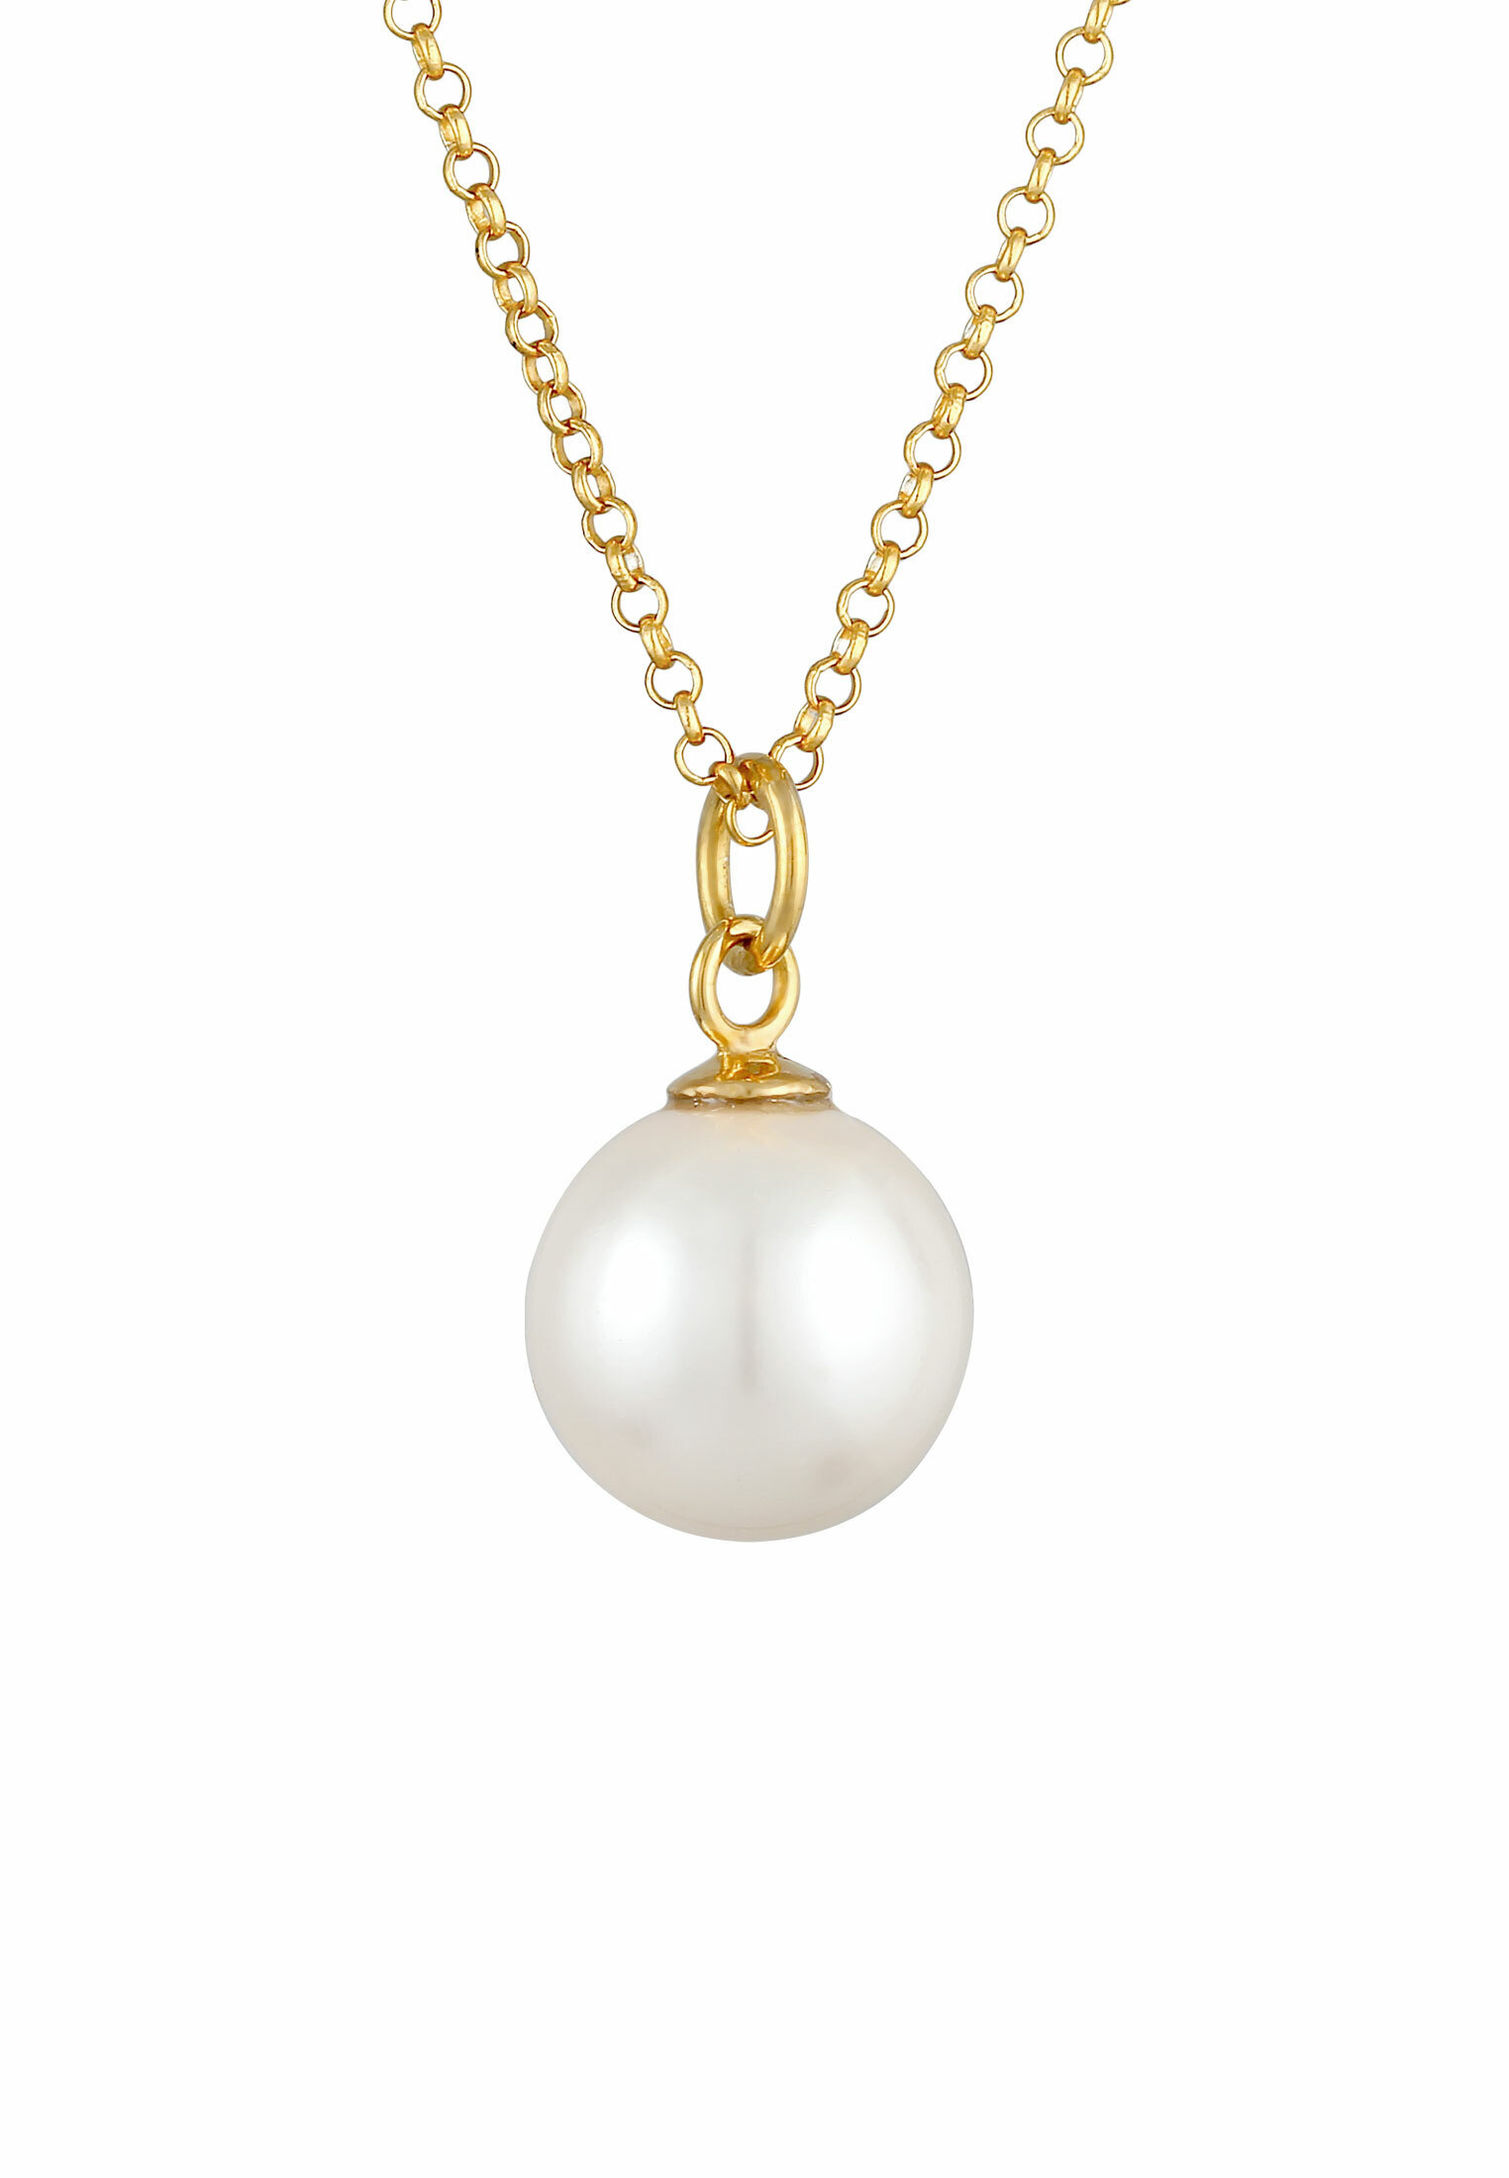 Nenalina Halskette Perlen Anhänger Rund Klassik 925 Silber Farbe: Gold,  Größe: 45 cm | Weltbild.de